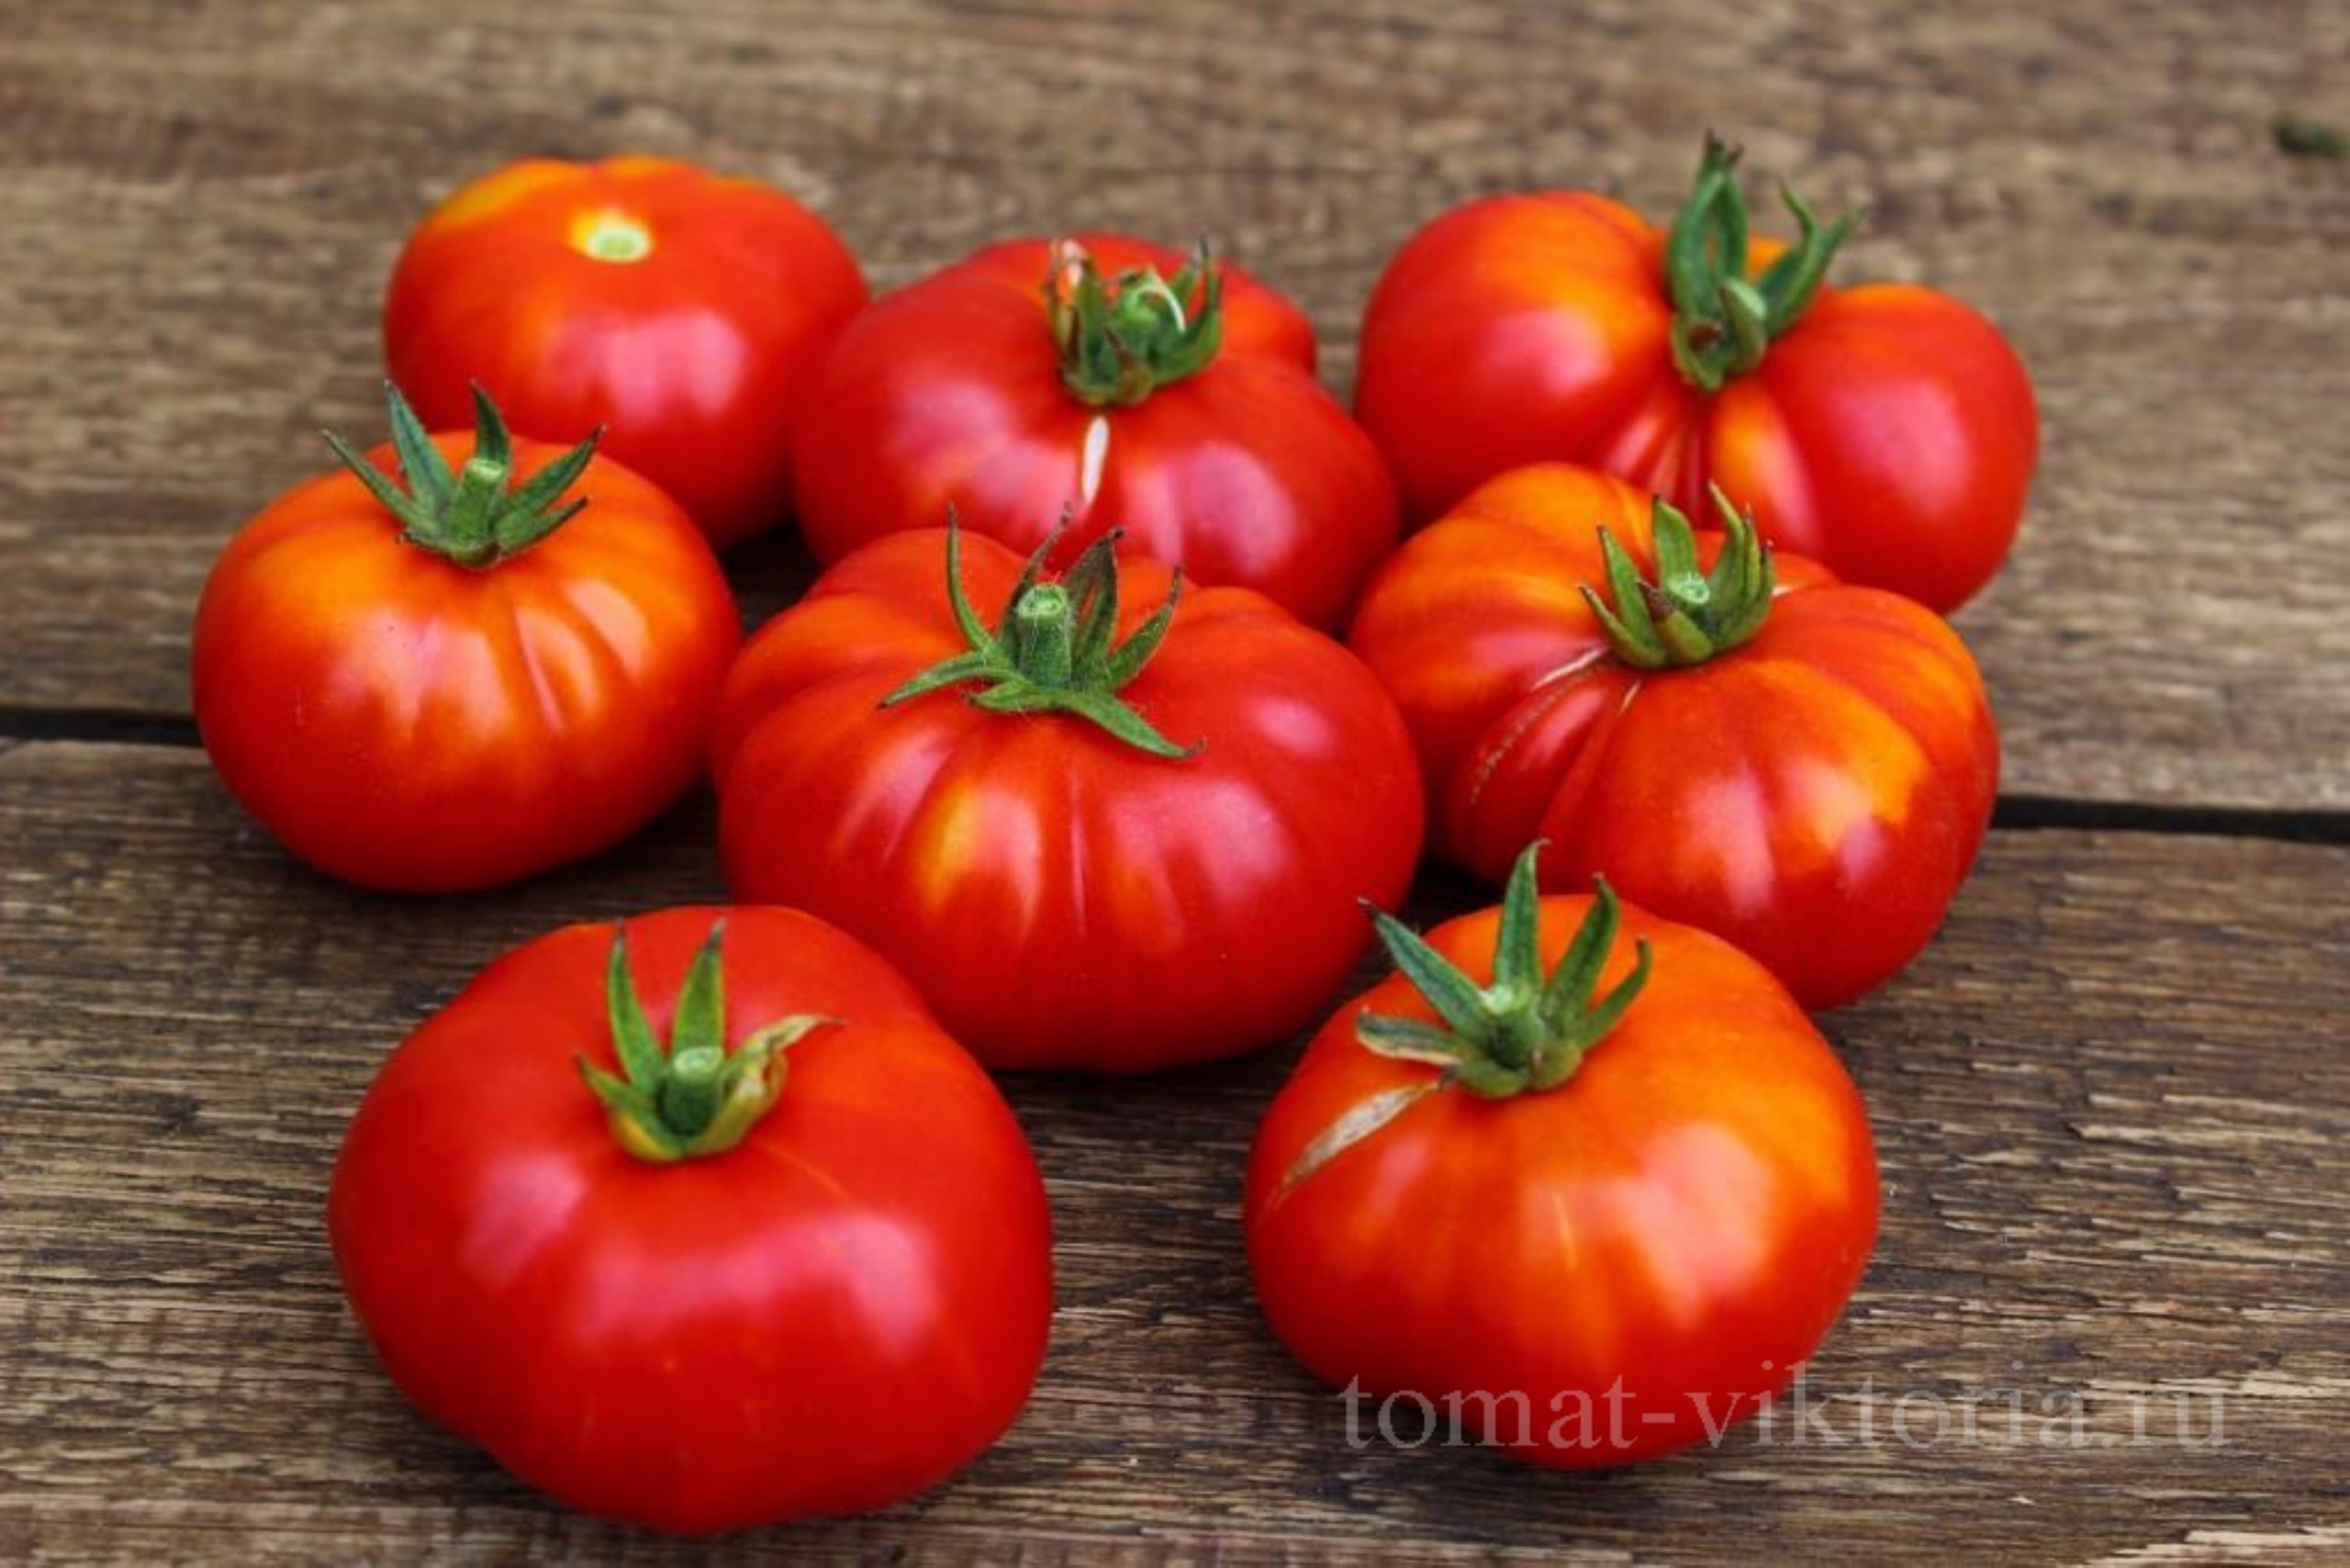 Как заказать -  у Виктории - Купить семена томатов